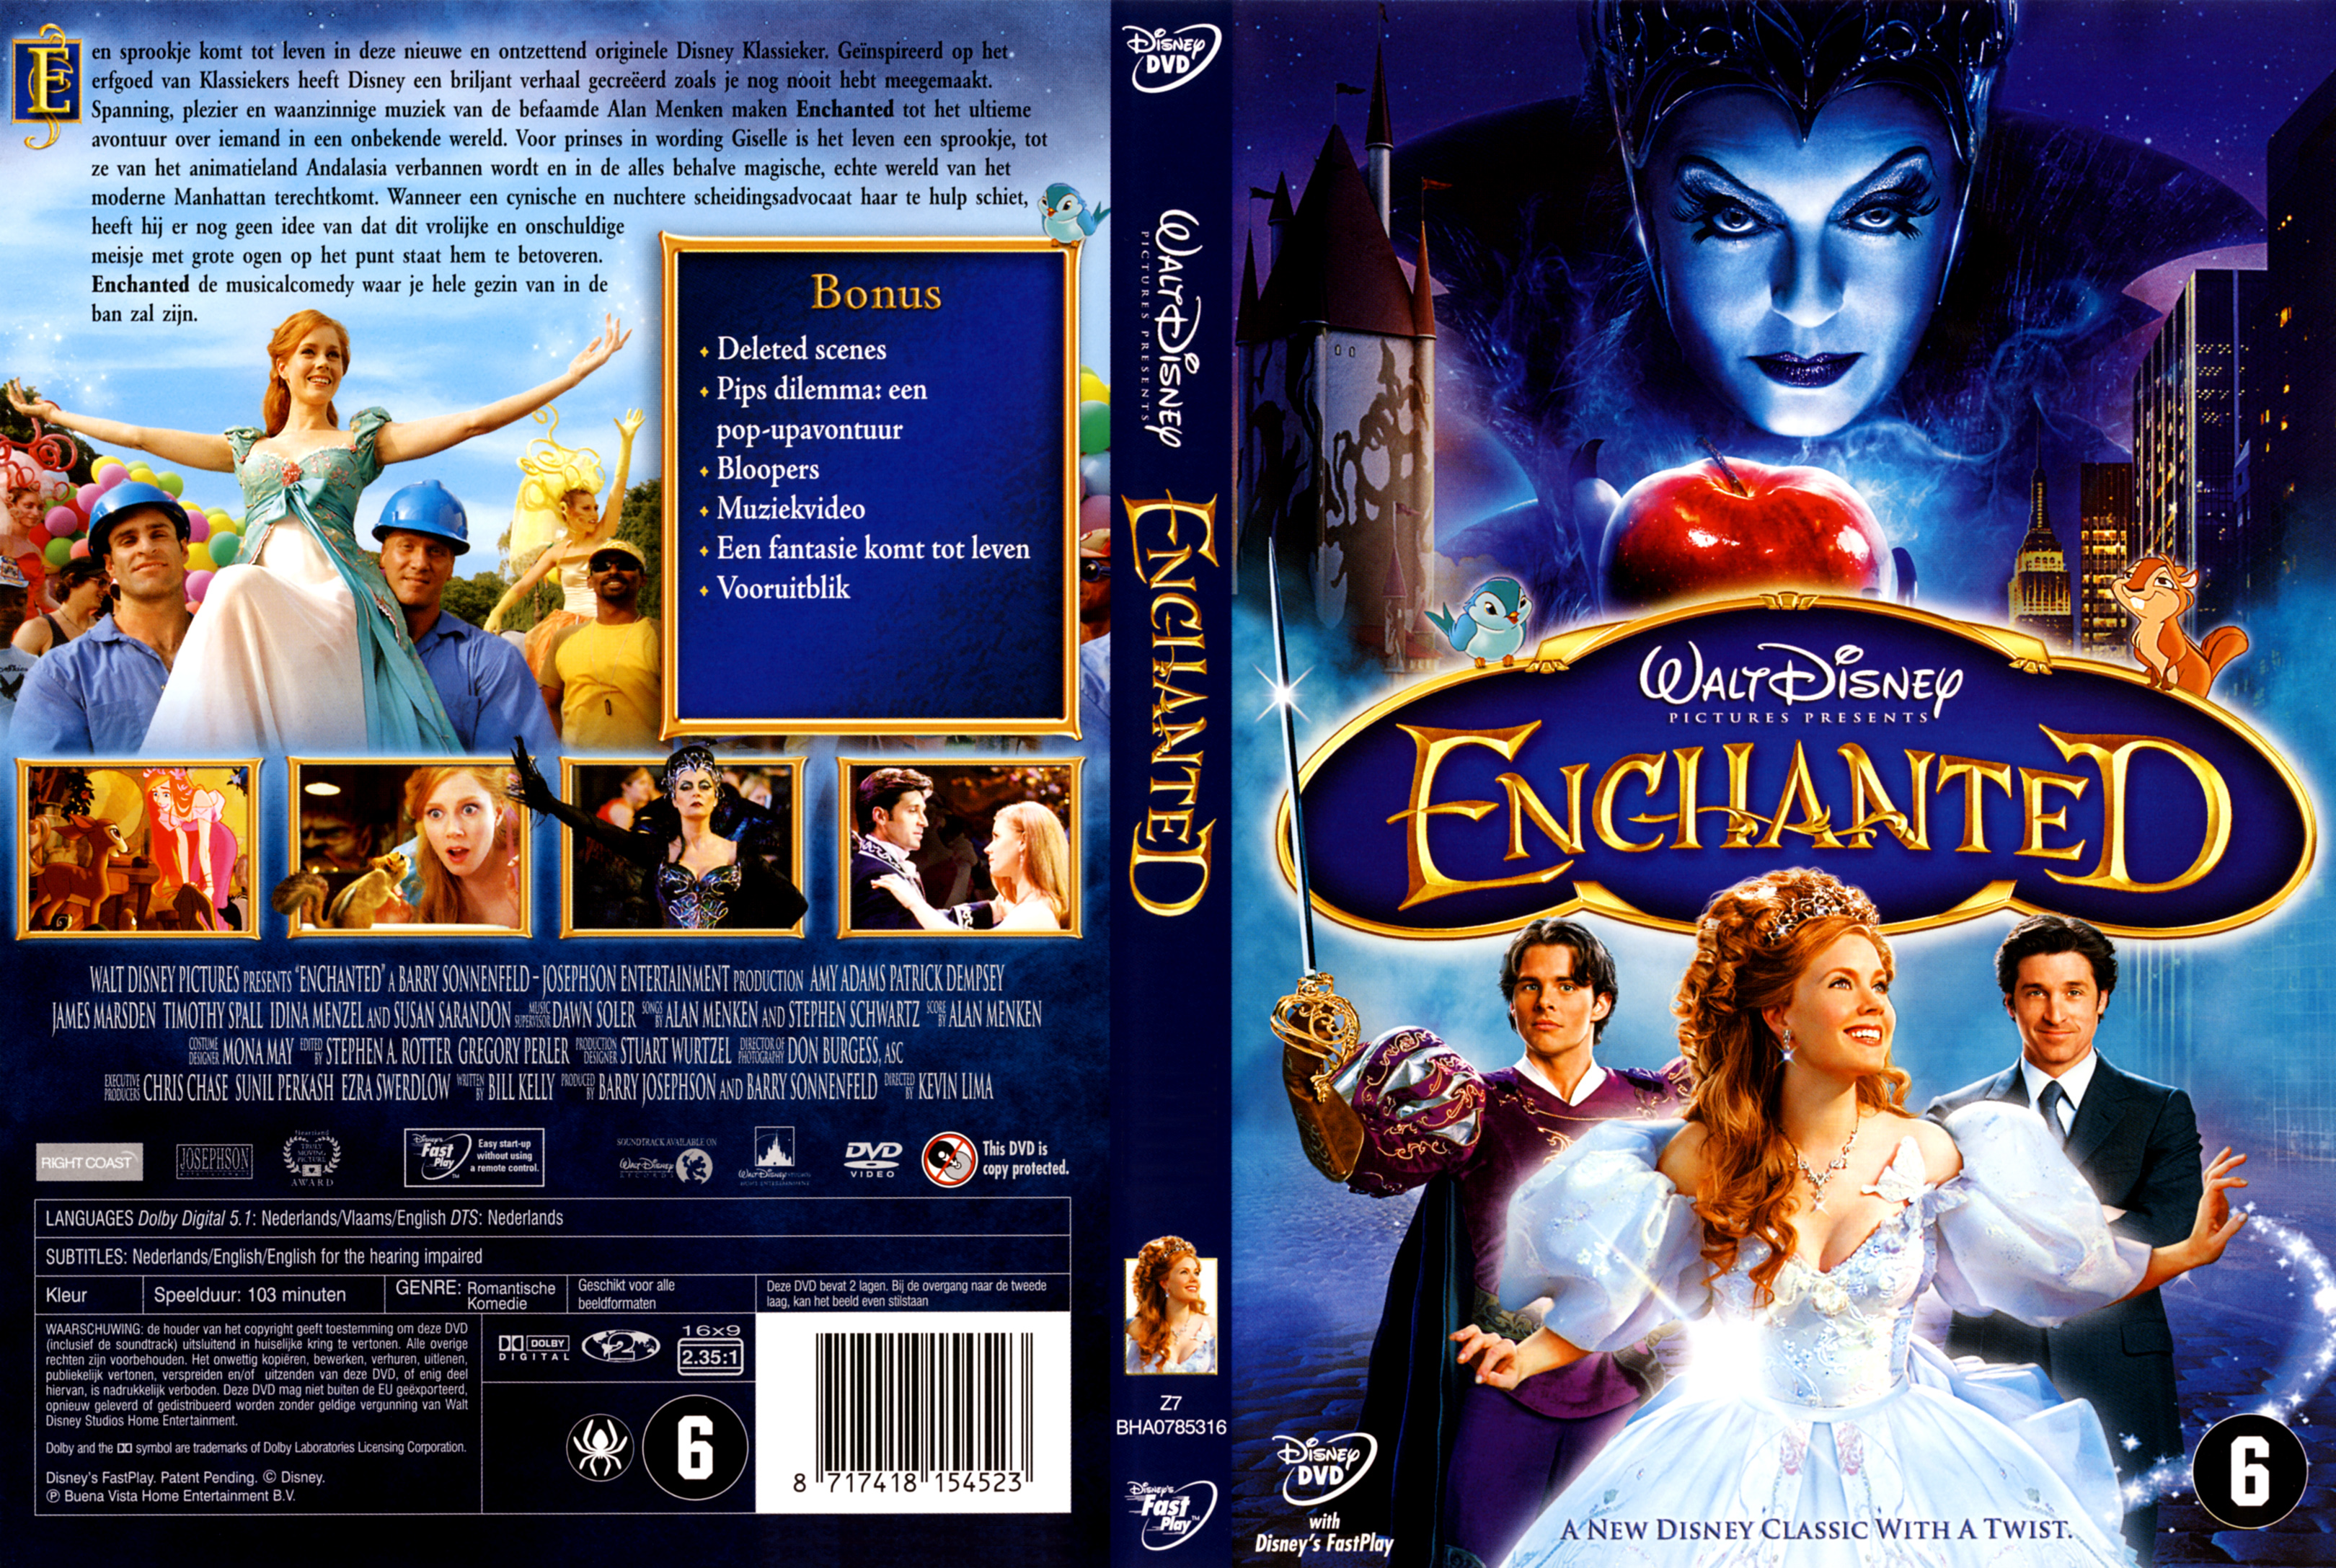 Enchanted [8]